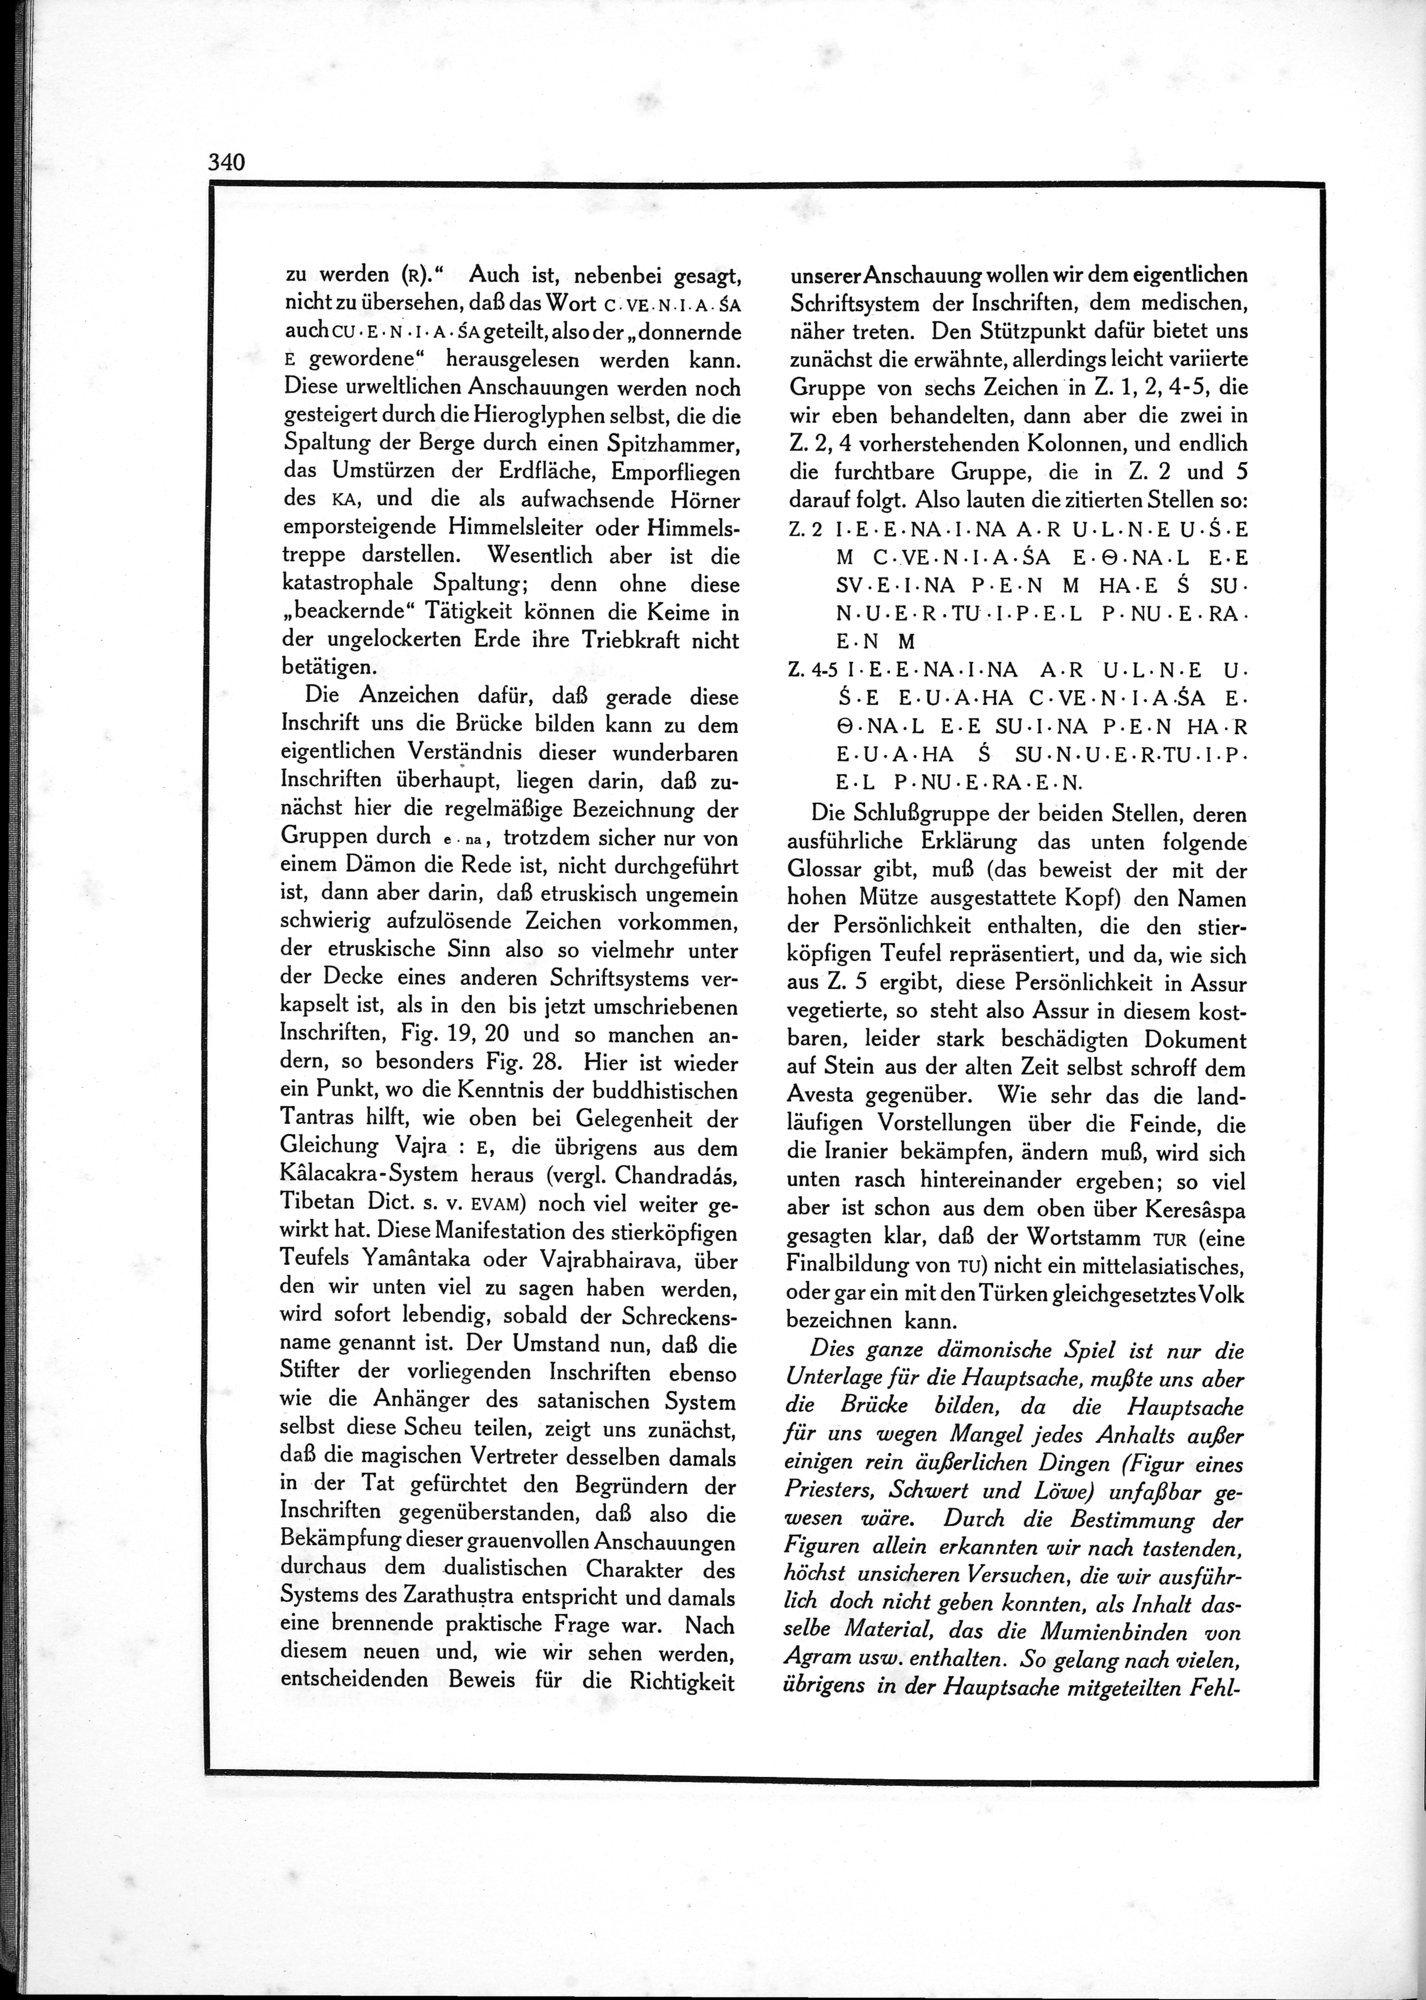 Die Teufel des Avesta und Ihre Beziehungen zur Ikonographie des Buddhismus Zentral-Asiens : vol.1 / Page 344 (Grayscale High Resolution Image)